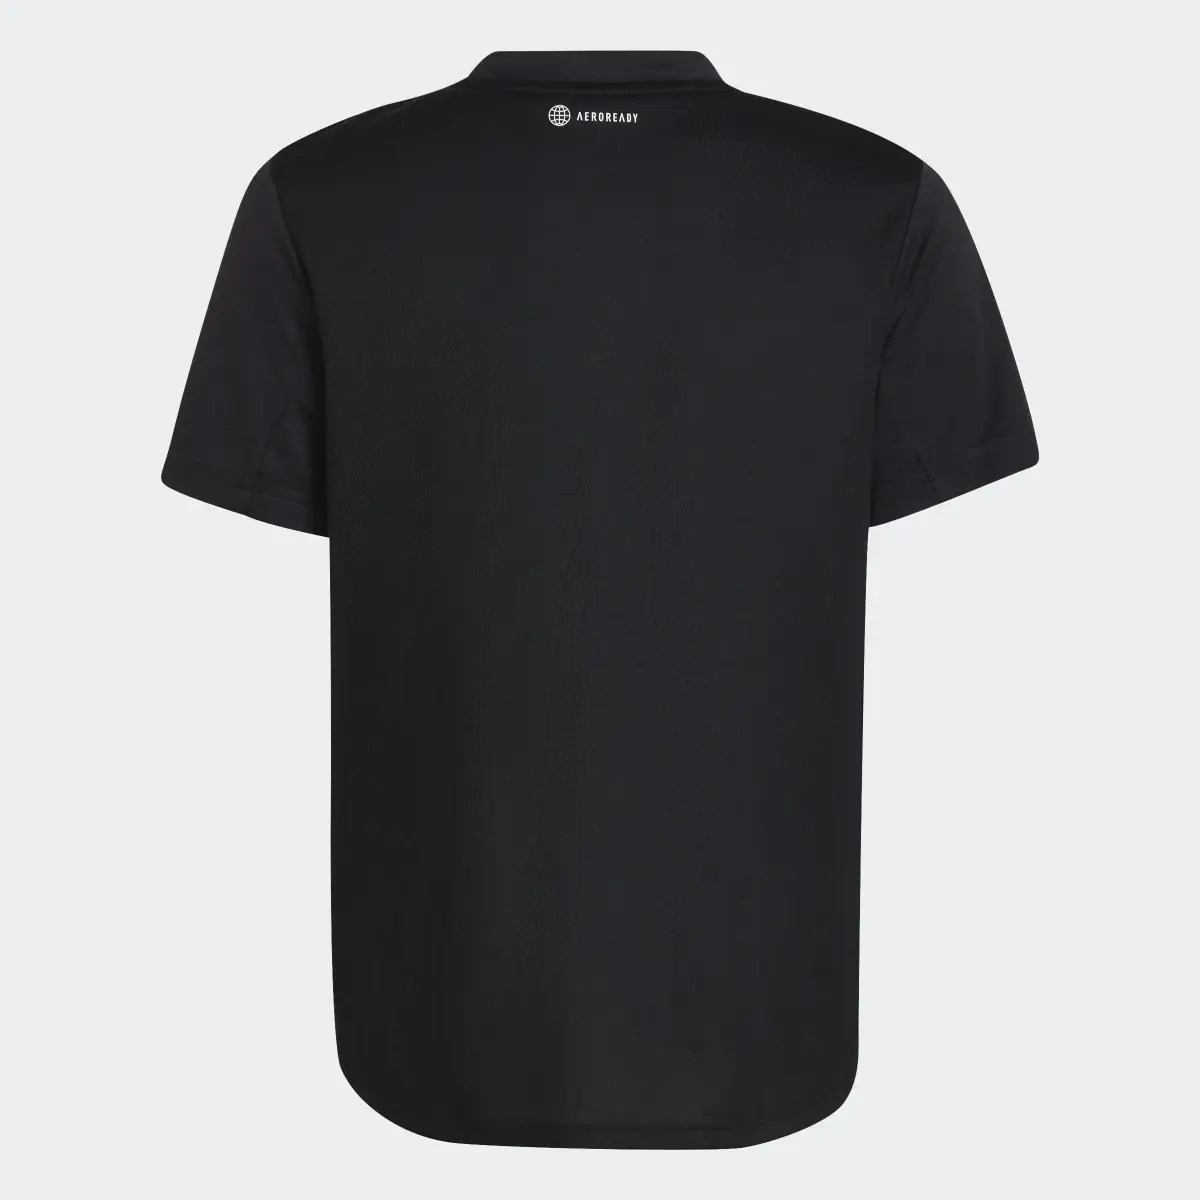 Adidas T-shirt AEROREADY Designed for Sport. 2